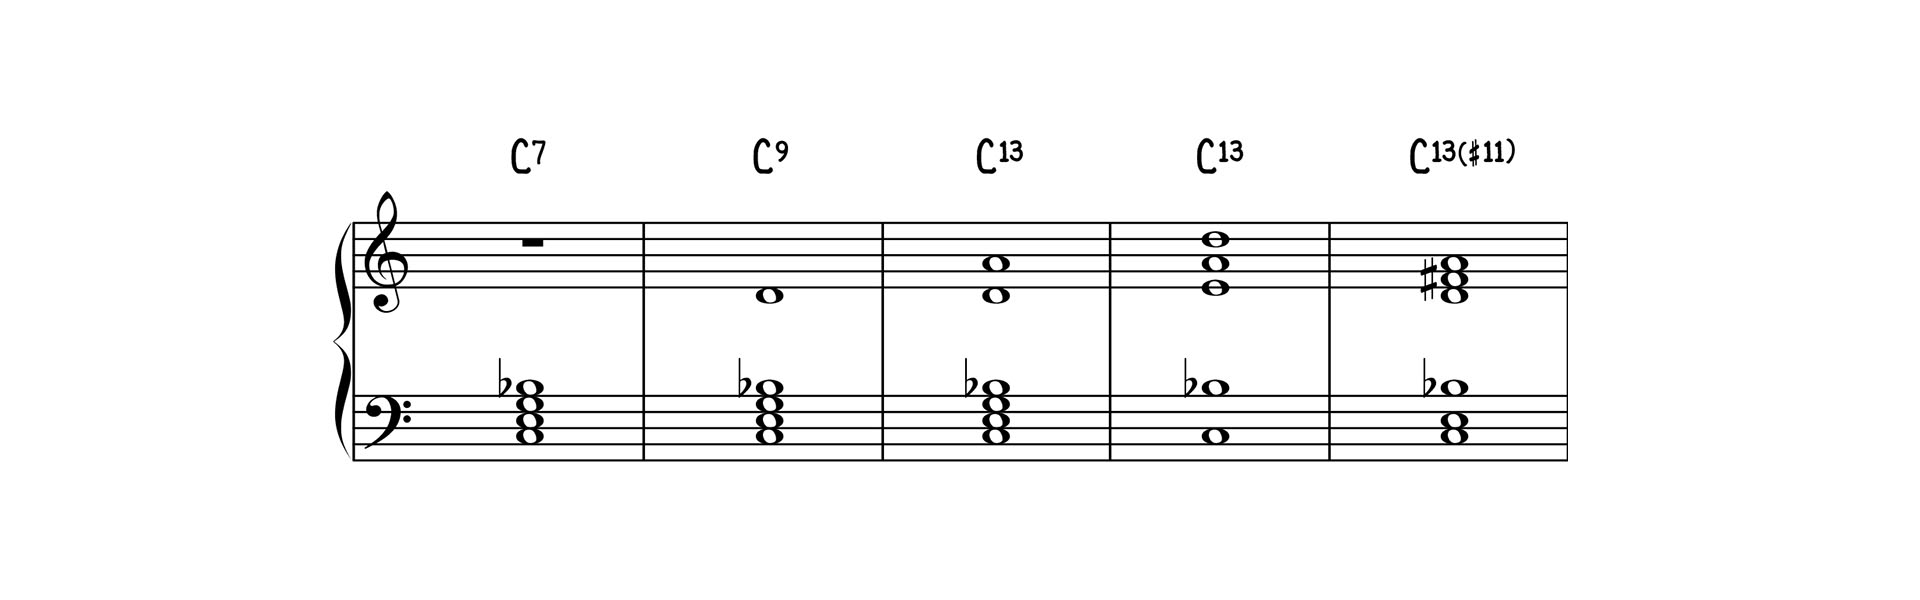 属扩展和弦声部 C7